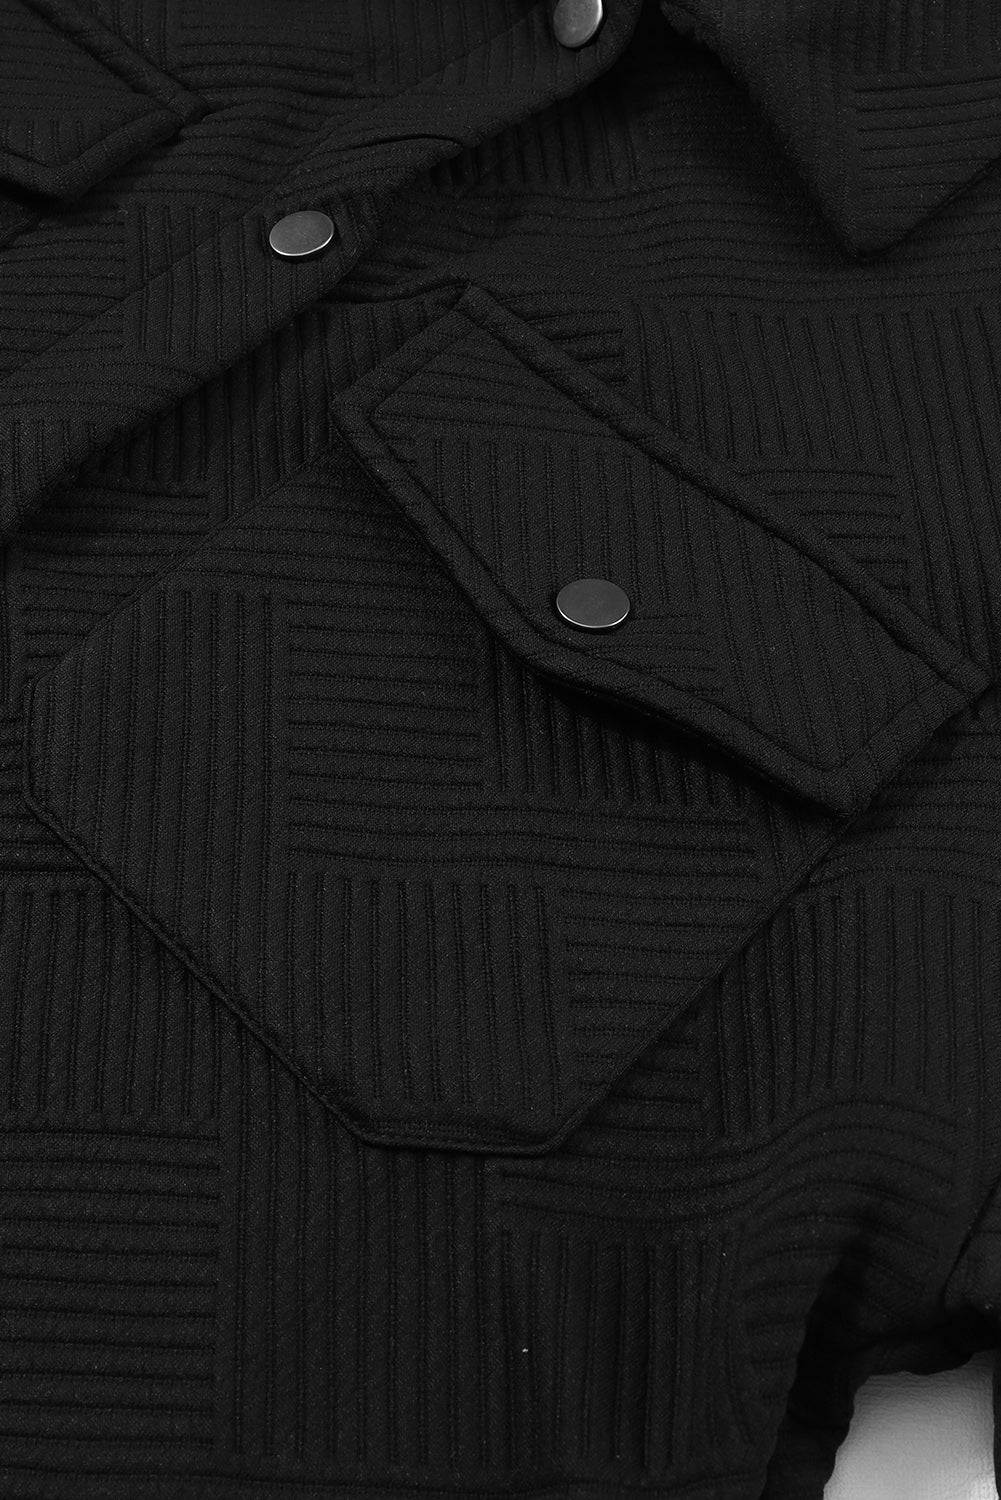 Veste boutonnée noire à poche à rabat texturé uni